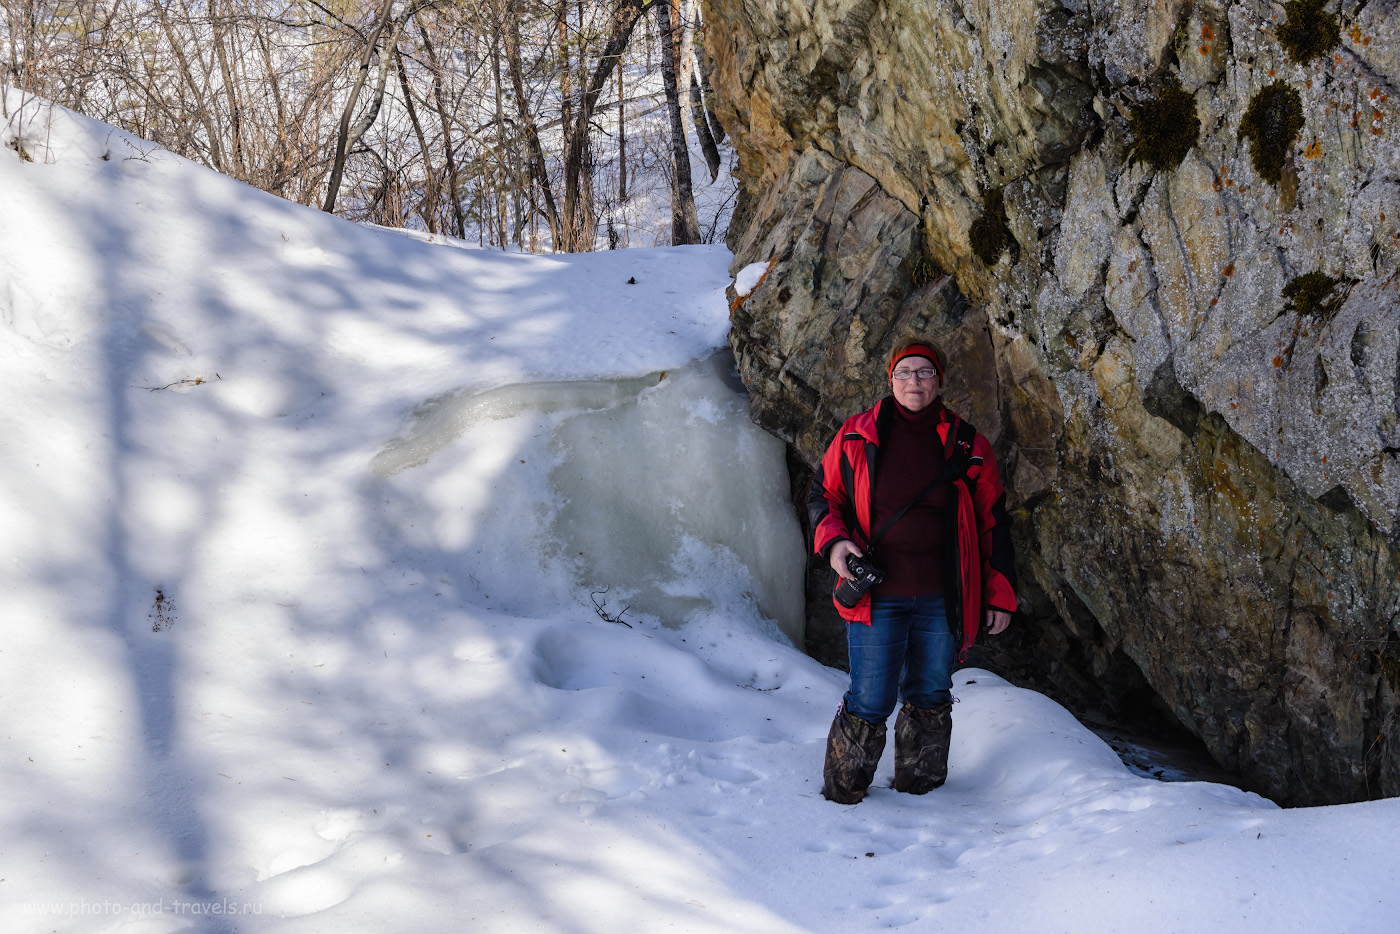 Фотография 16. Так выглядит Ольгинский водопад на Межовке зимой. 1/80, -0.67, 9.0, 250, 38.